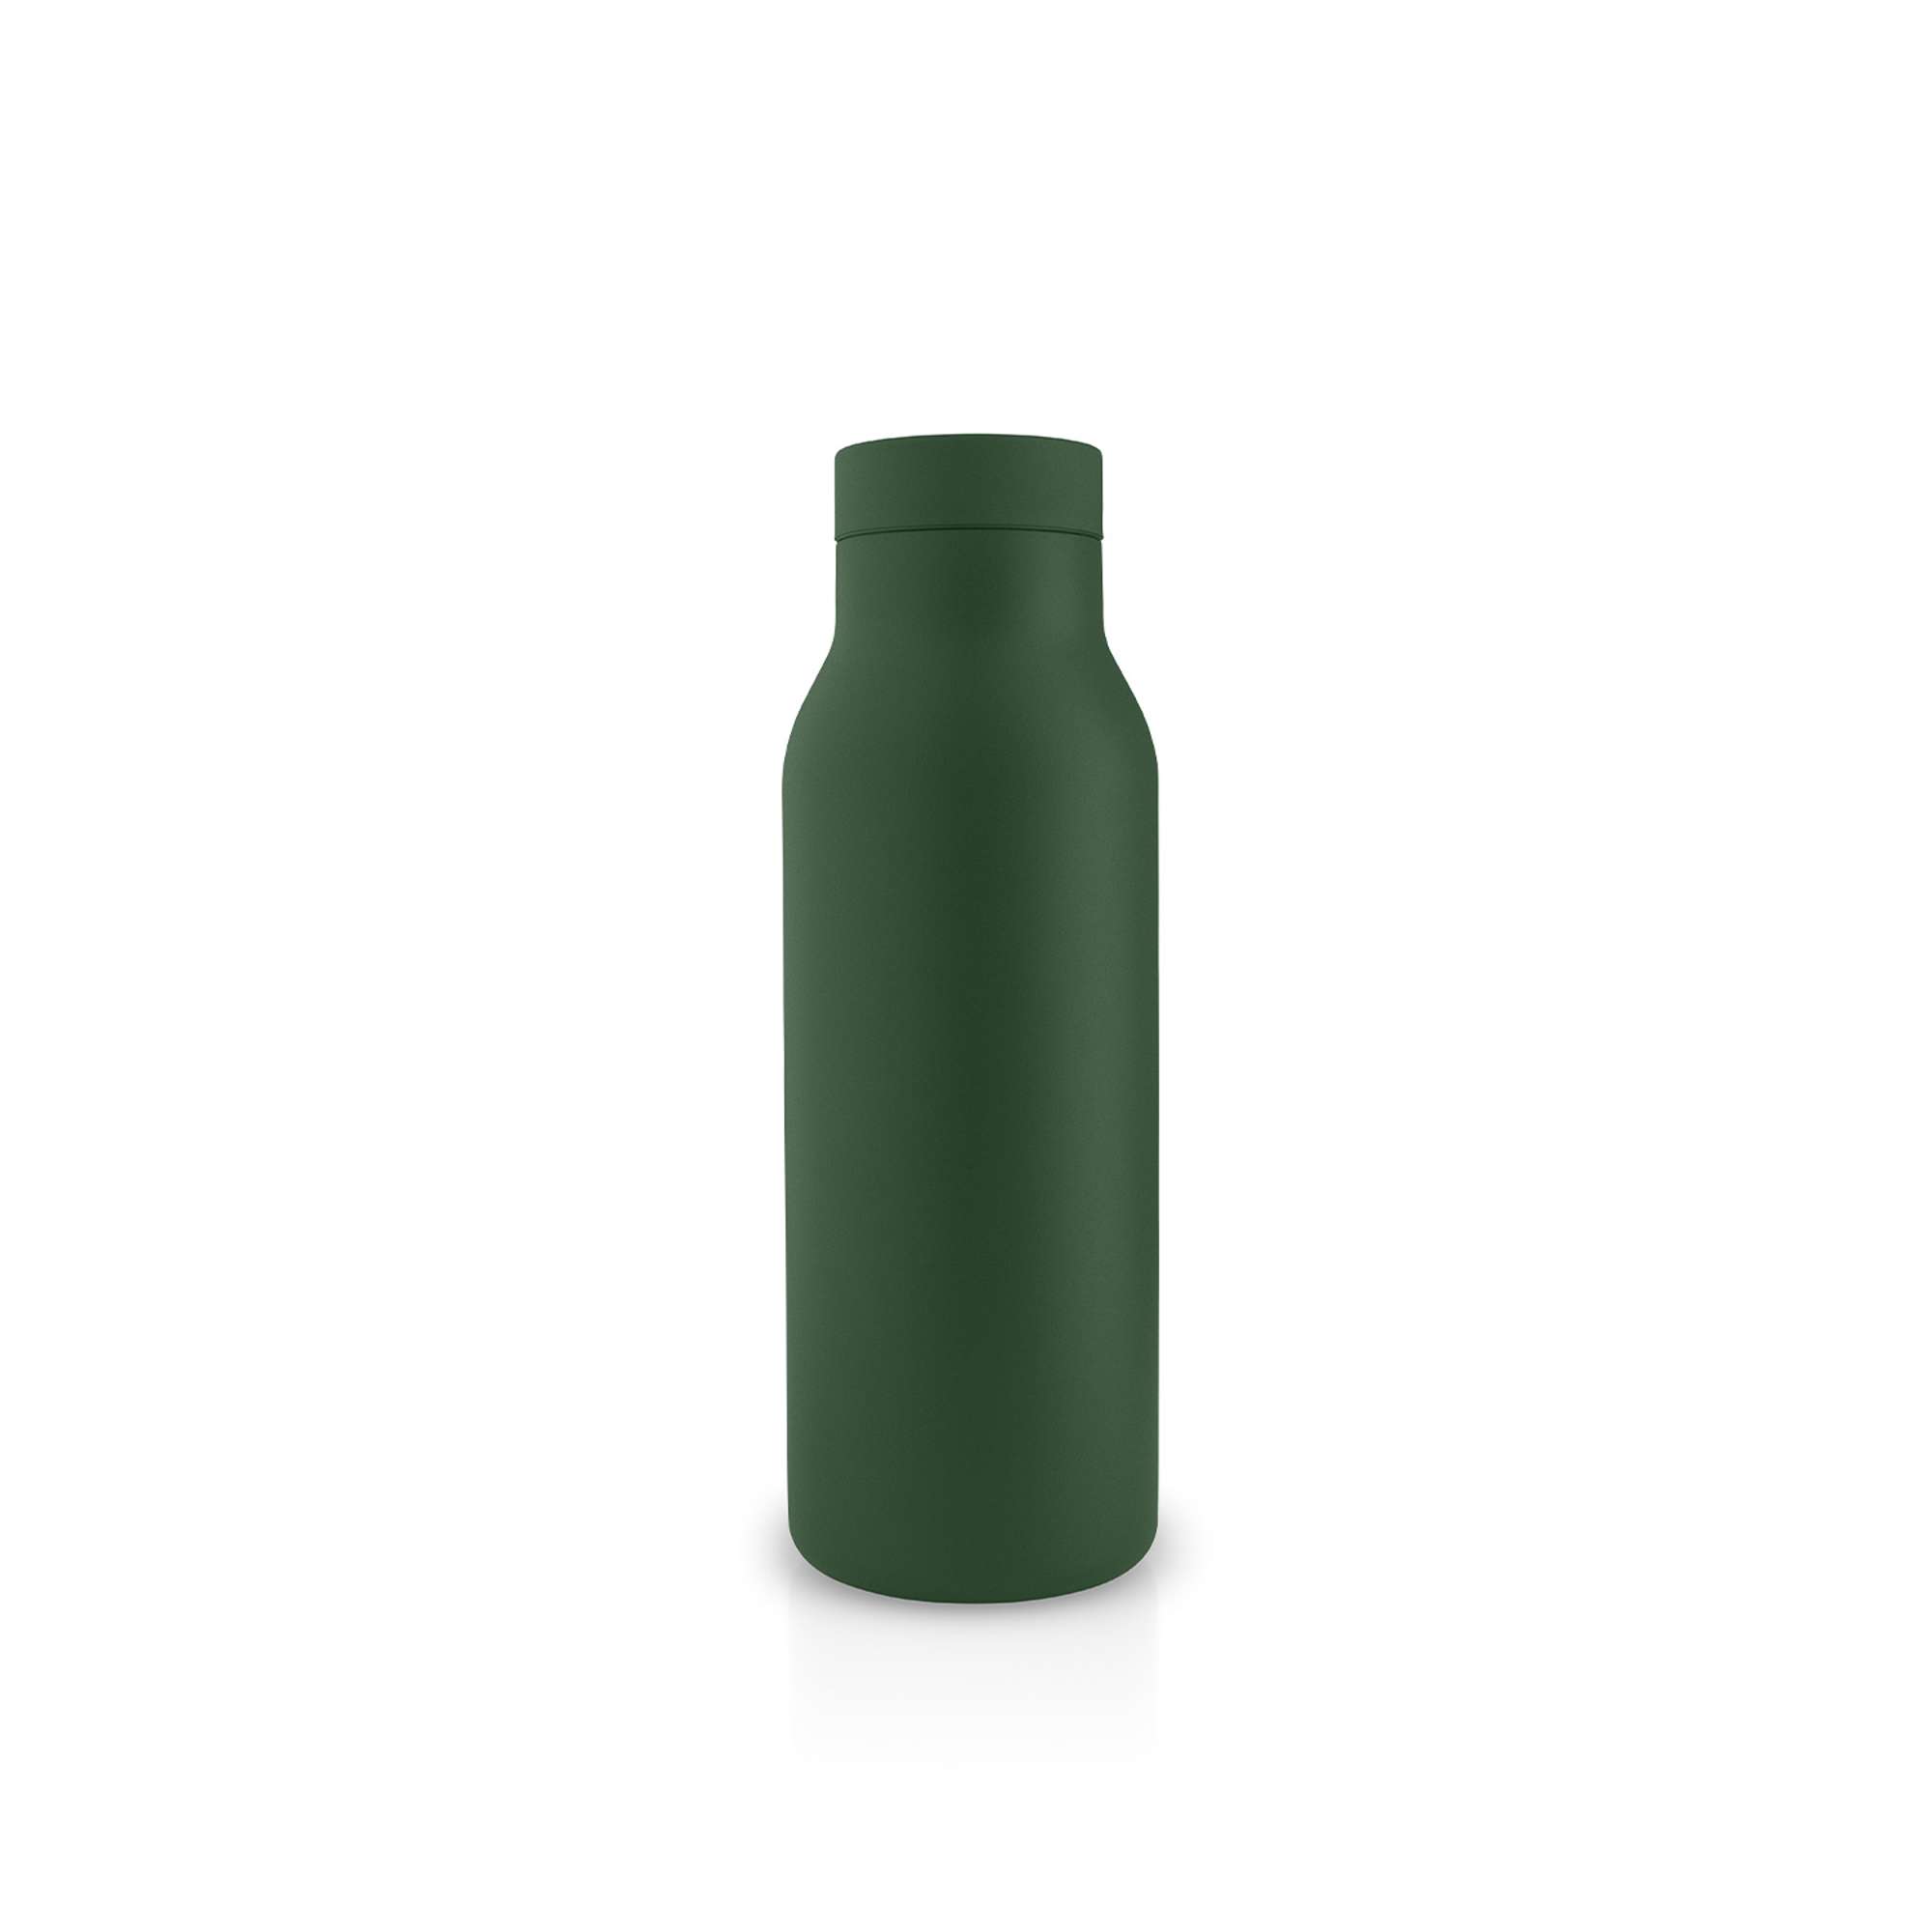 SKY water bottle in dark green